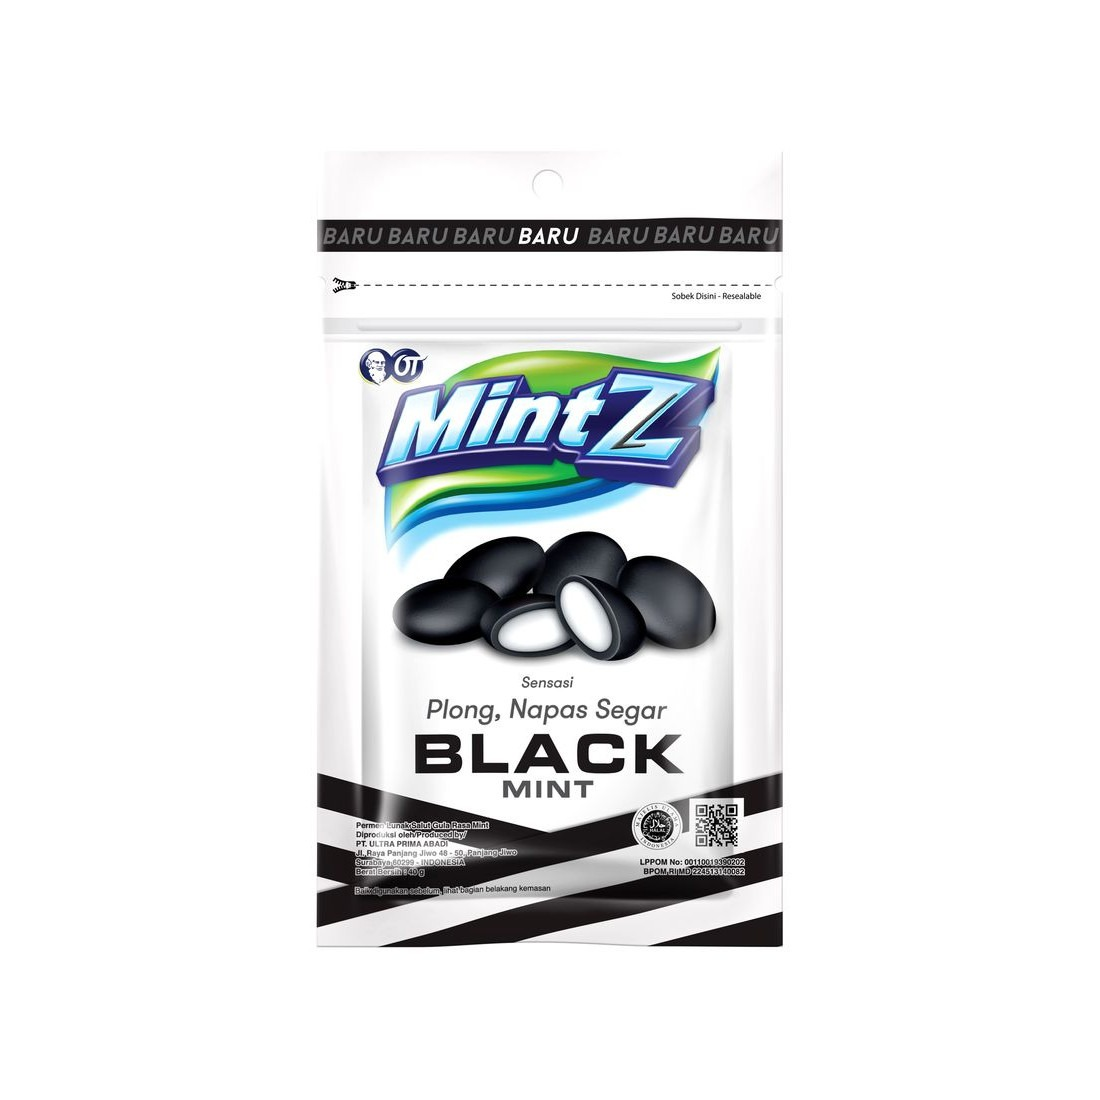 Mintz 40G Candy Black Mint